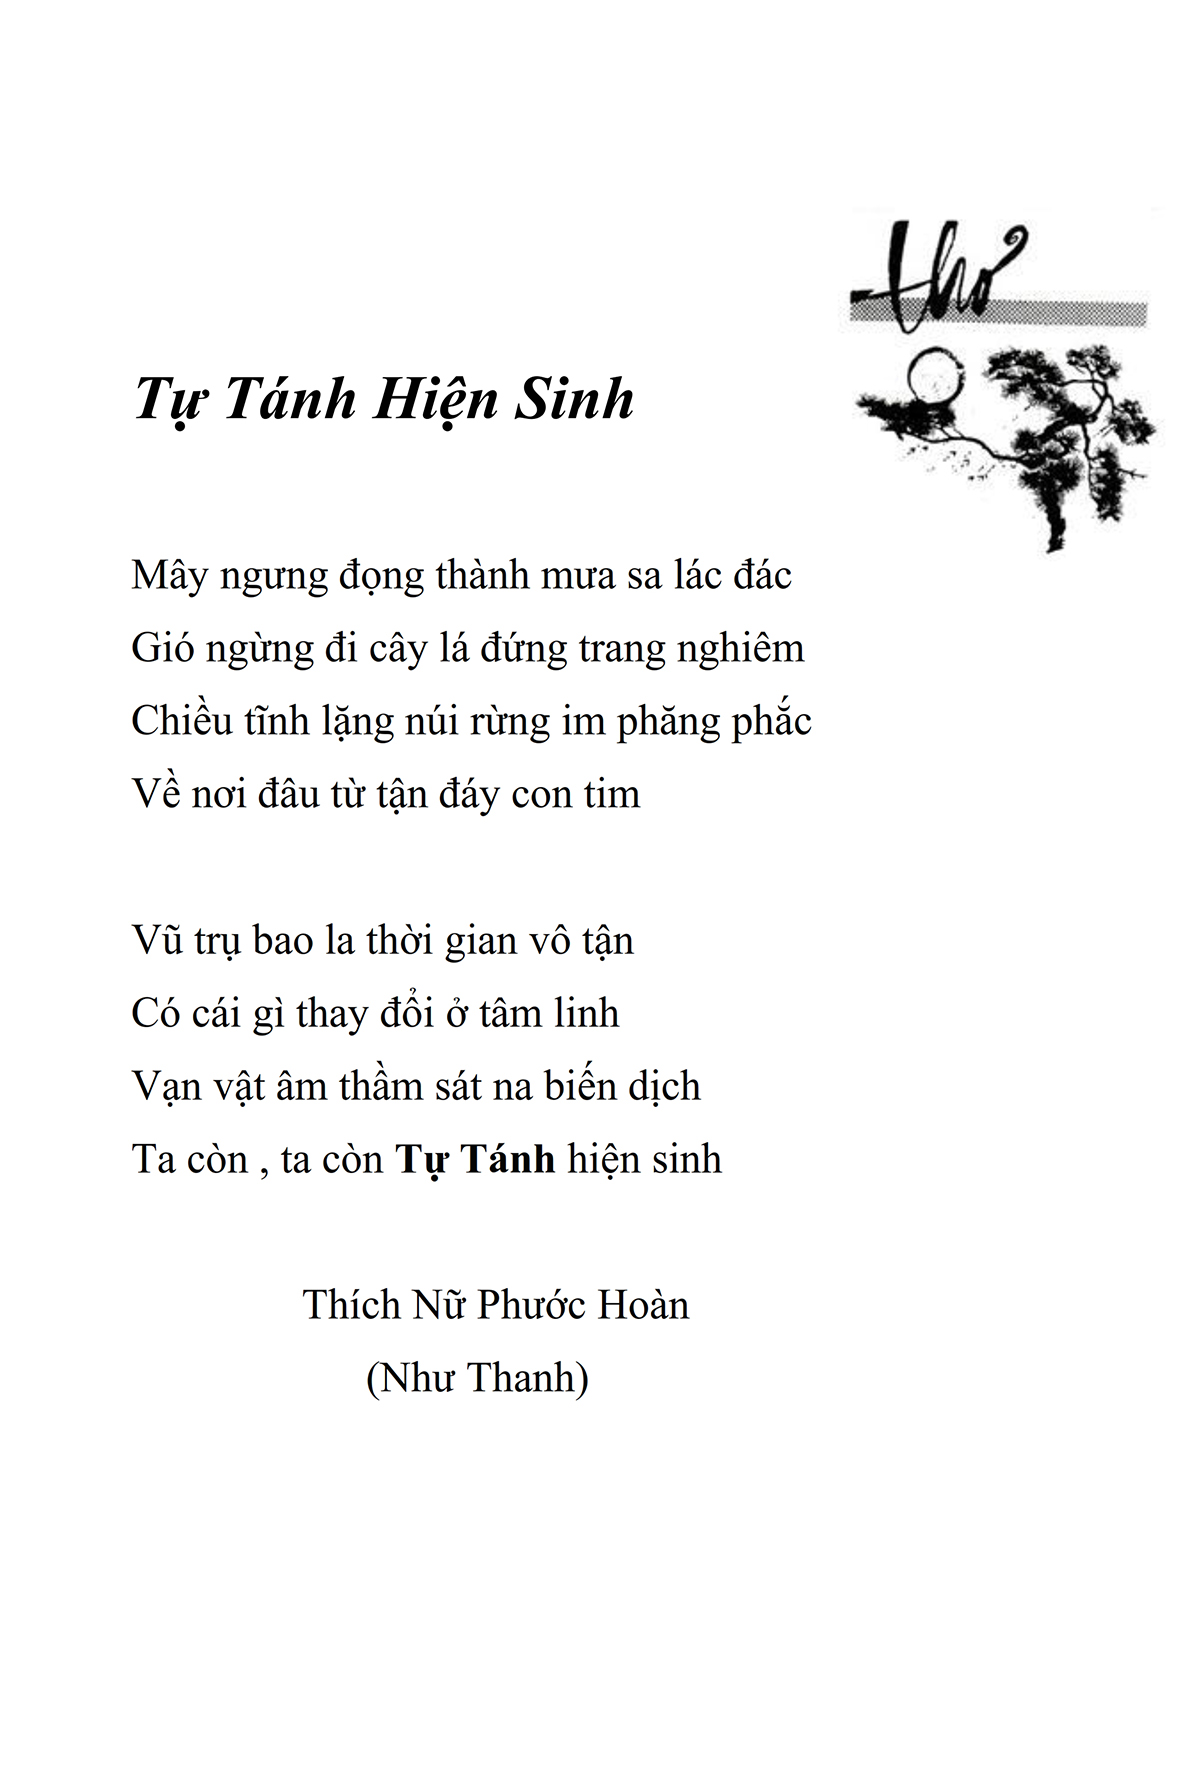 Tu Tanh Hien Sinh